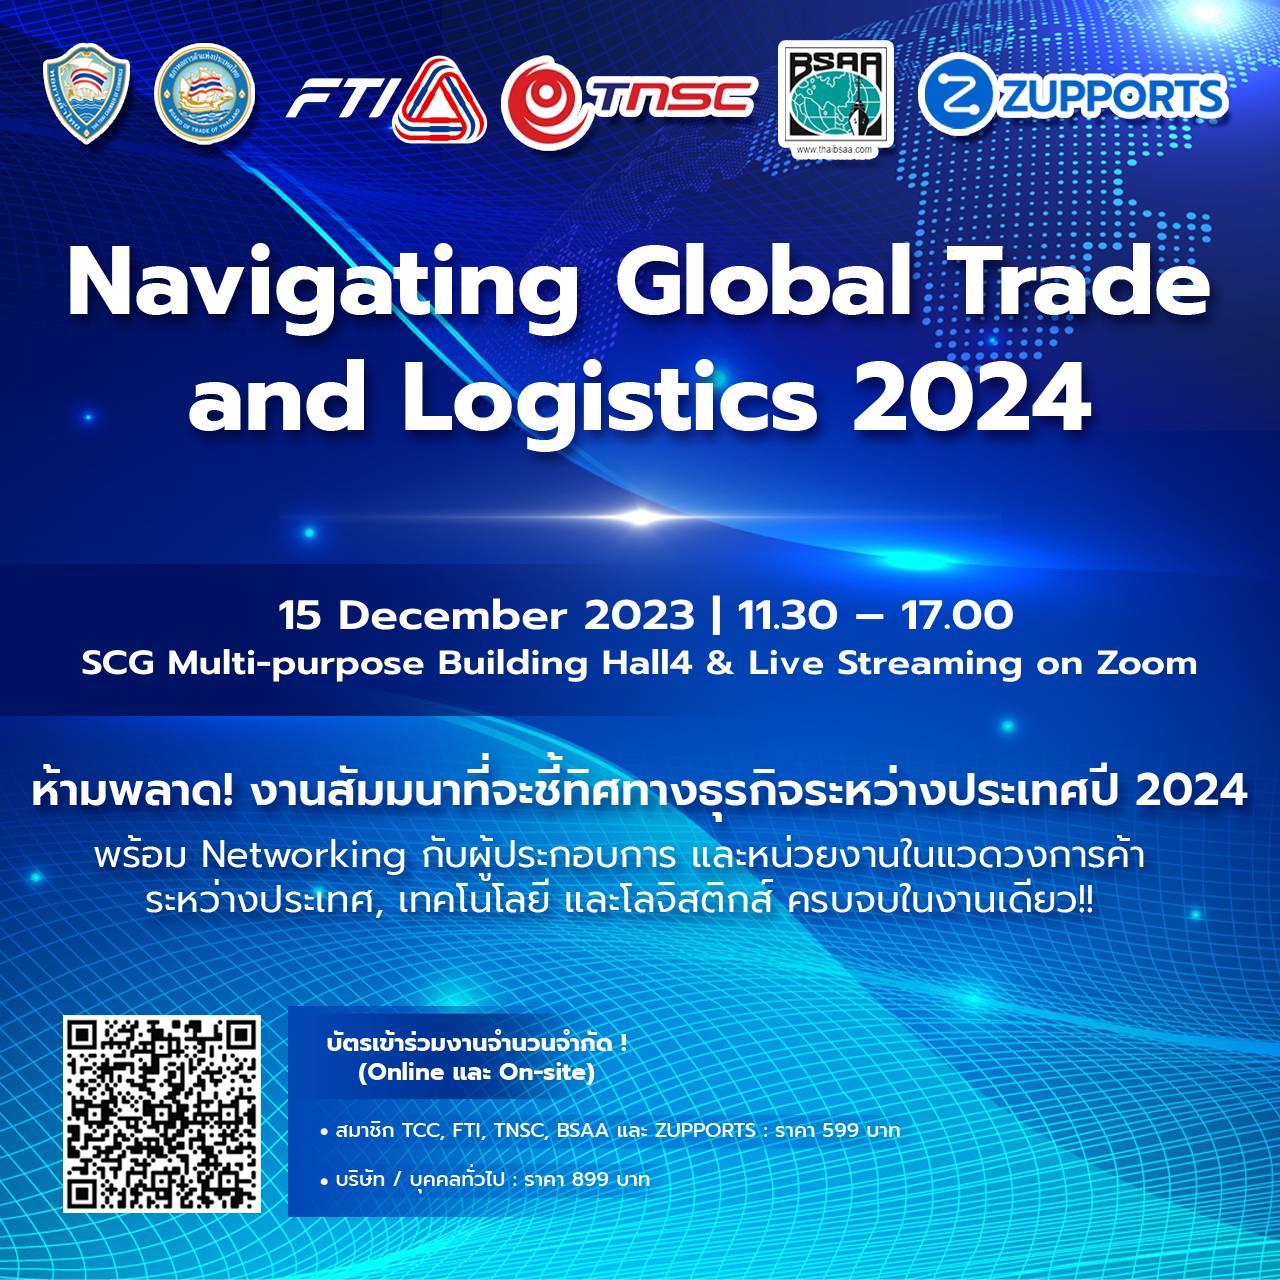 “เราเปลี่ยนสถานการณ์โลกไม่ได้ แต่เราเปลี่ยนตัวเองได้” มอง แนวคิด ผู้นำเข้า ส่งออกไทย ขยายธุรกิจสู่ระดับโลก - บทสรุป งานเสวนา Navigating Global Trade and Logistics 2024